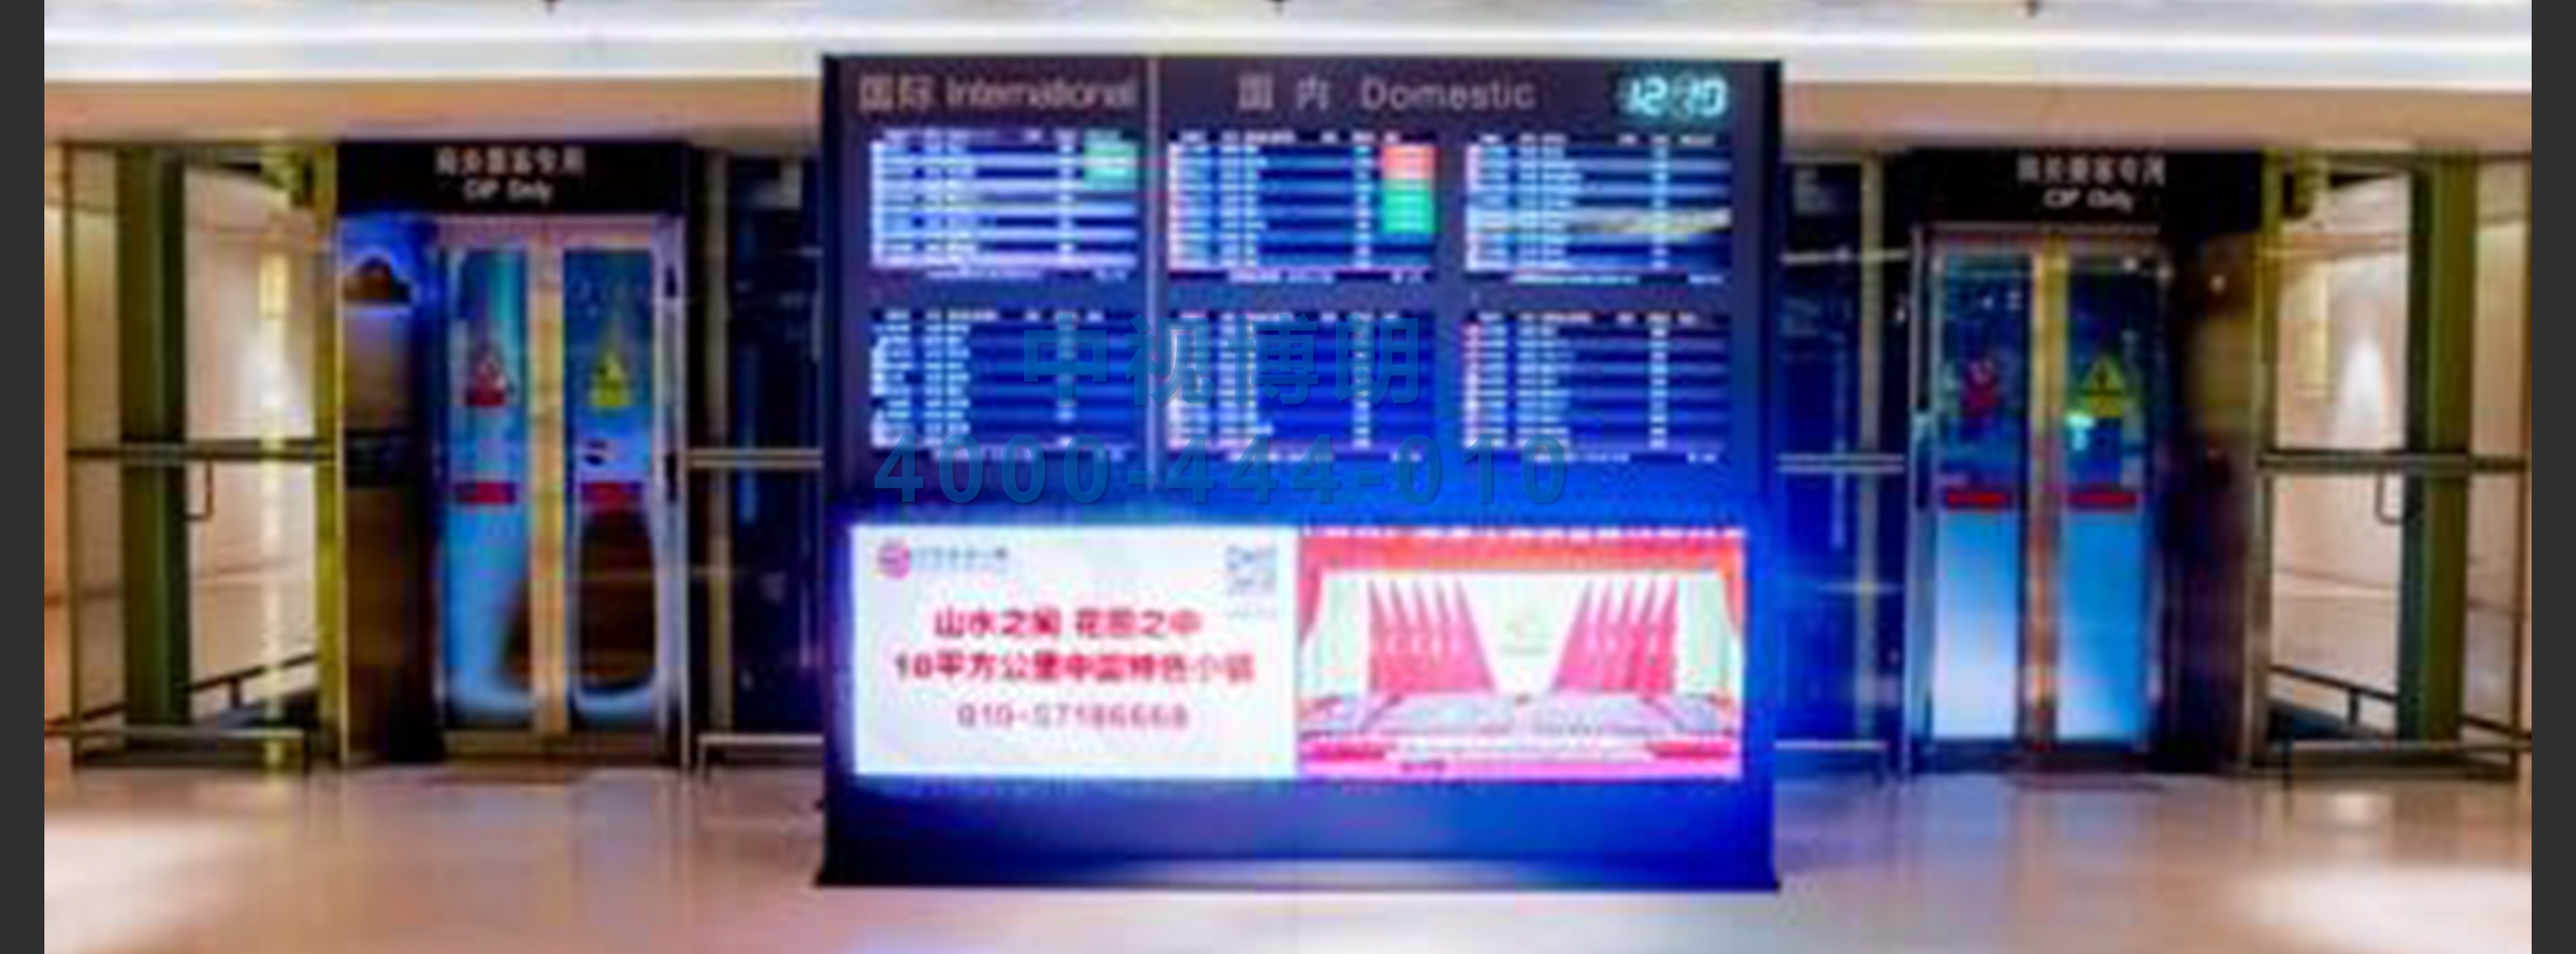 北京首都机场广告-T3贵宾室大厅成对超大刷屏1-2